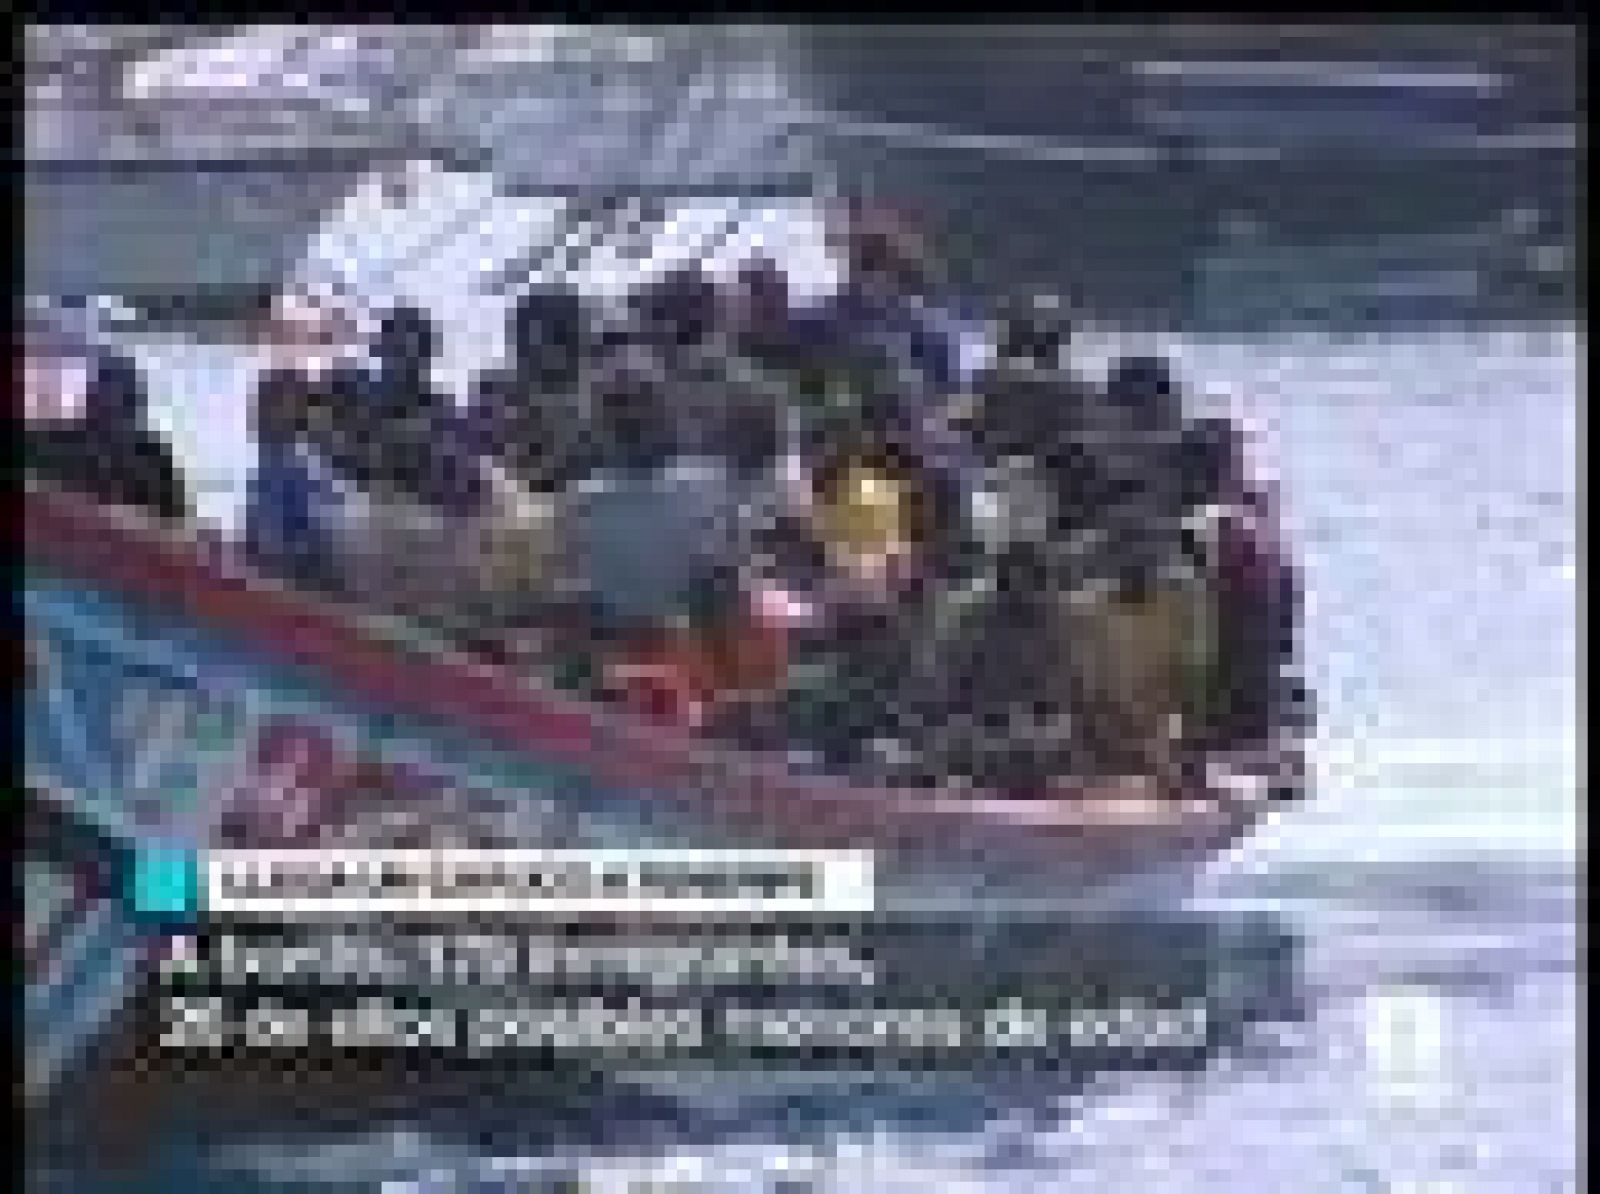 Interceptado un cayuco con 179 inmigrantes cuando navegaban rumbo a Tenerife, entre ellos 25 posibles menores de edad (29/06/08).